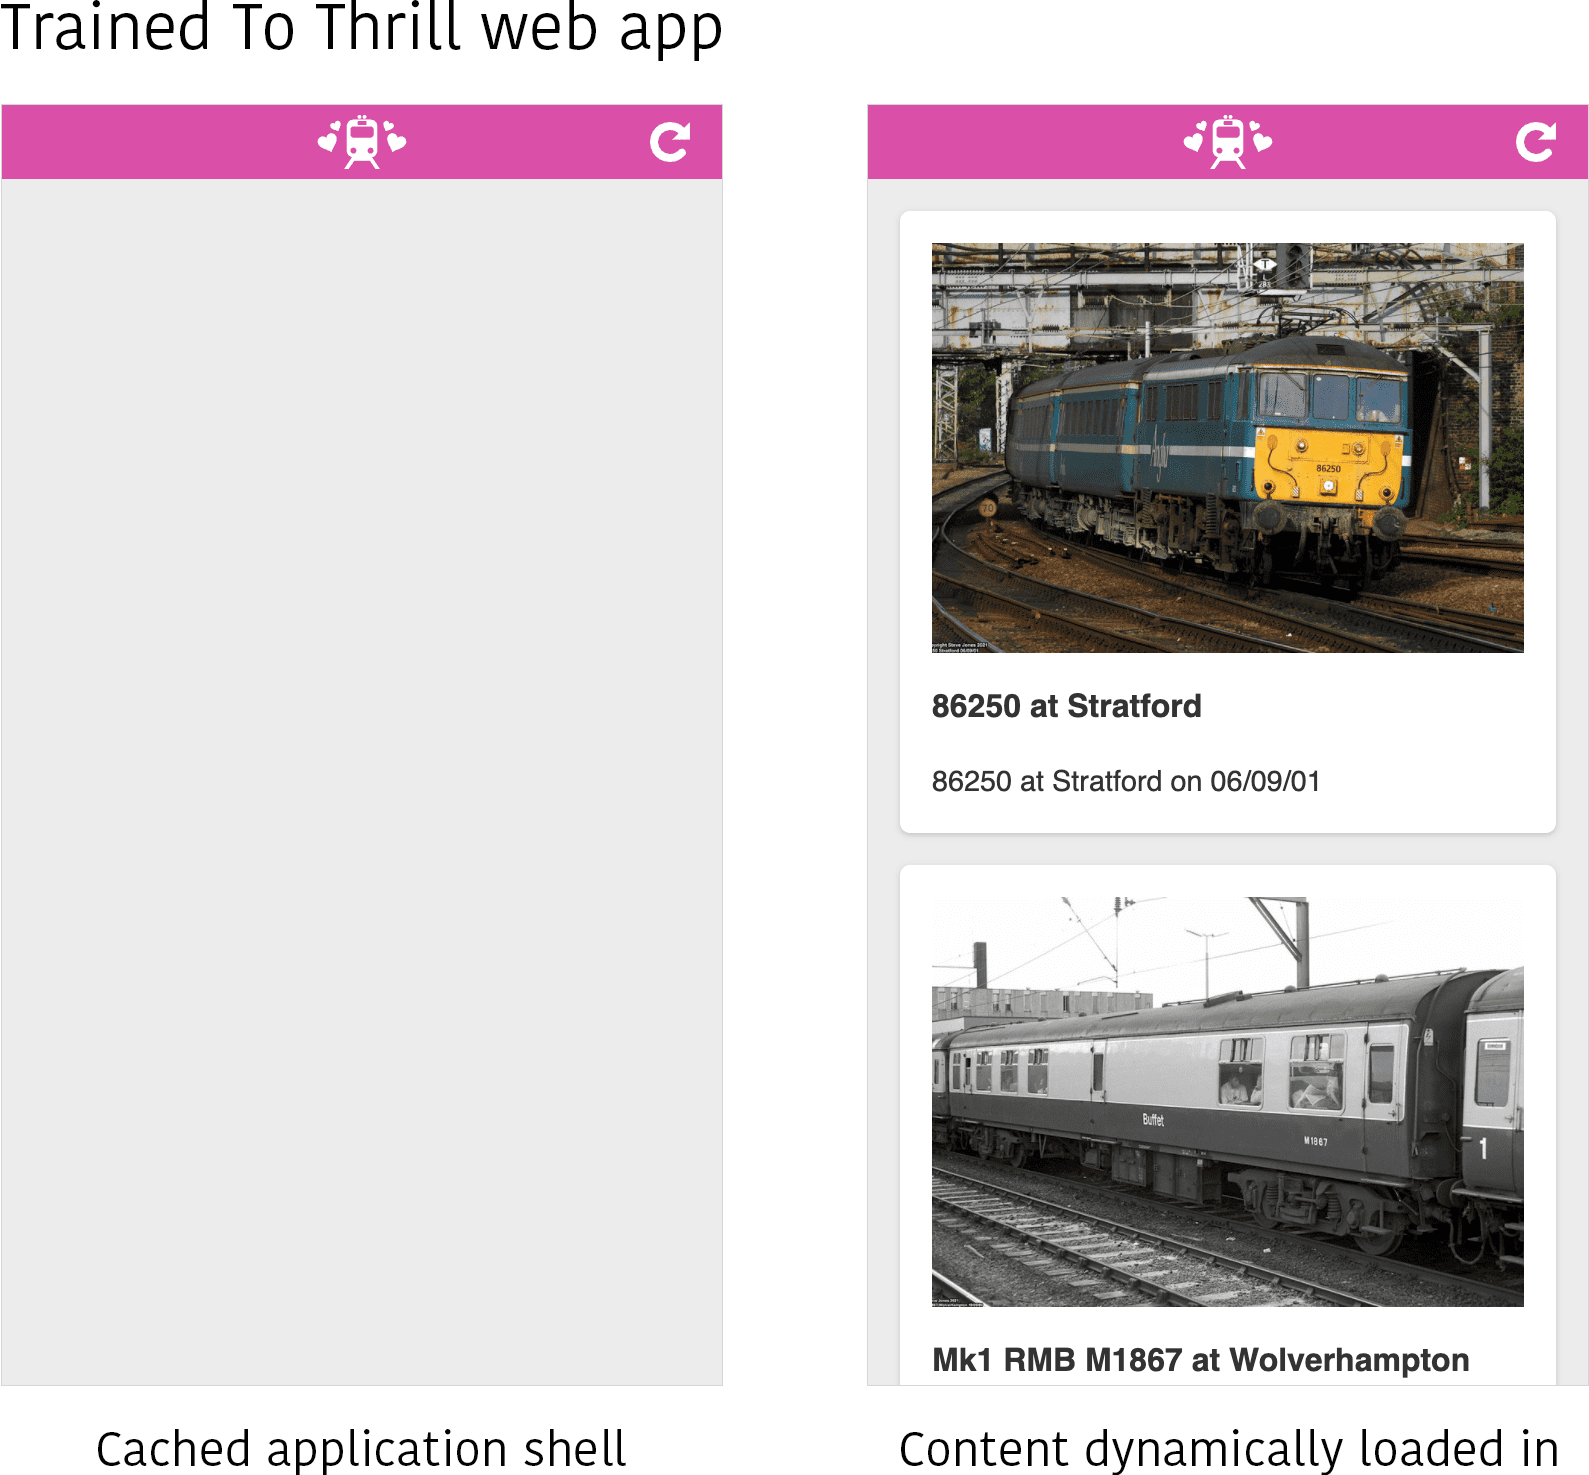 Ảnh chụp màn hình của ứng dụng web Trained to Thrill ở hai trạng thái khác nhau. Ở bên trái, chỉ hiển thị shell ứng dụng đã lưu vào bộ nhớ đệm mà không có nội dung nào được điền. Ở bên phải, nội dung (một vài hình ảnh về một số chuyến tàu) được tải động vào vùng nội dung của giao diện ứng dụng.